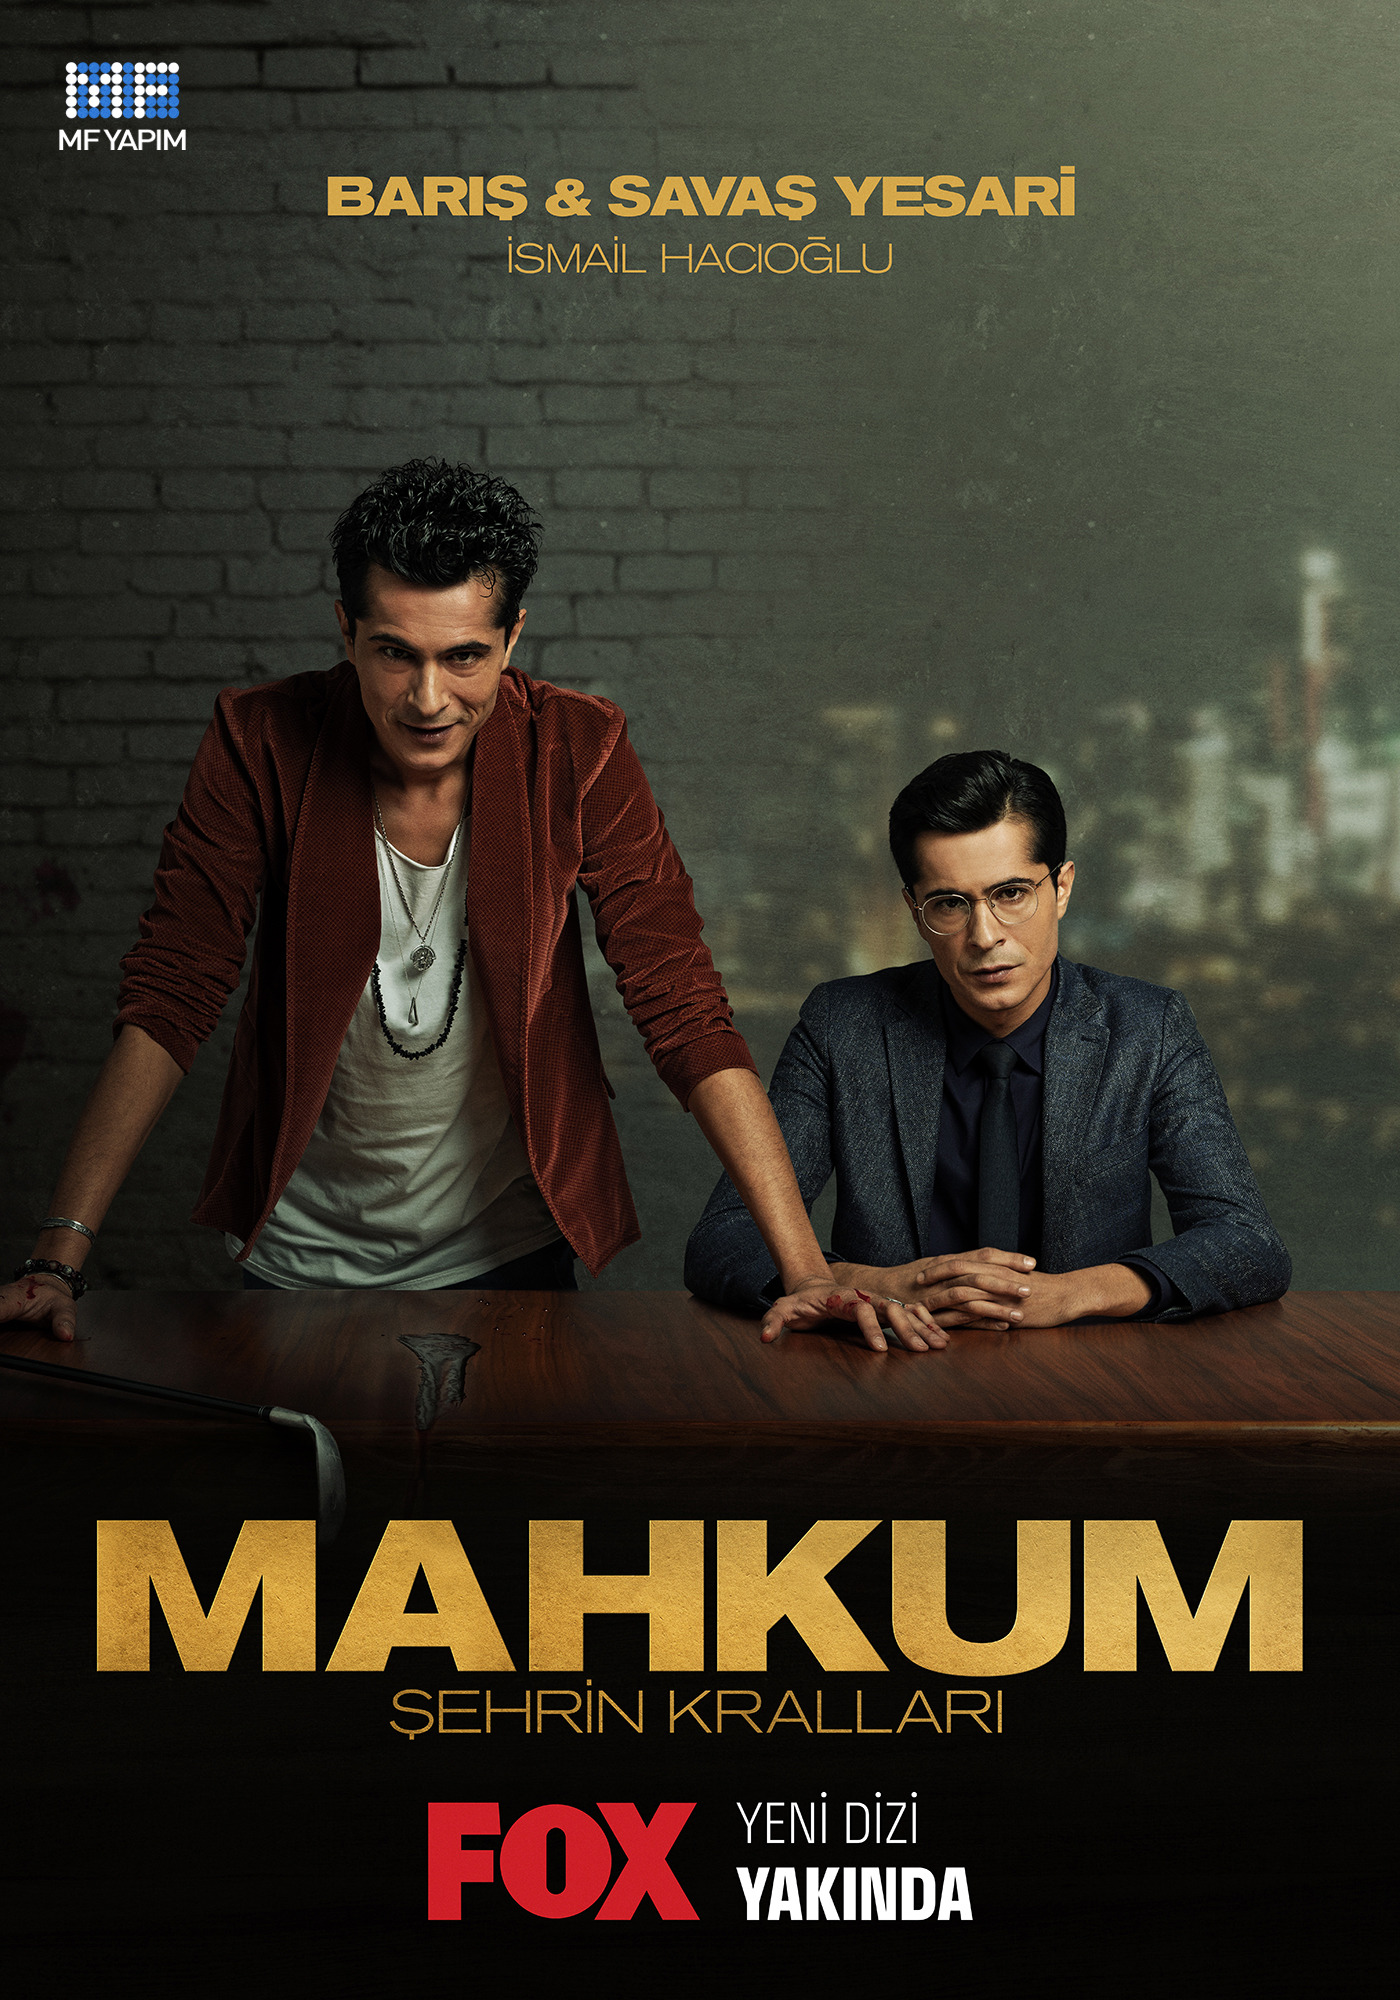 Mega Sized TV Poster Image for Mahkum (#4 of 5)